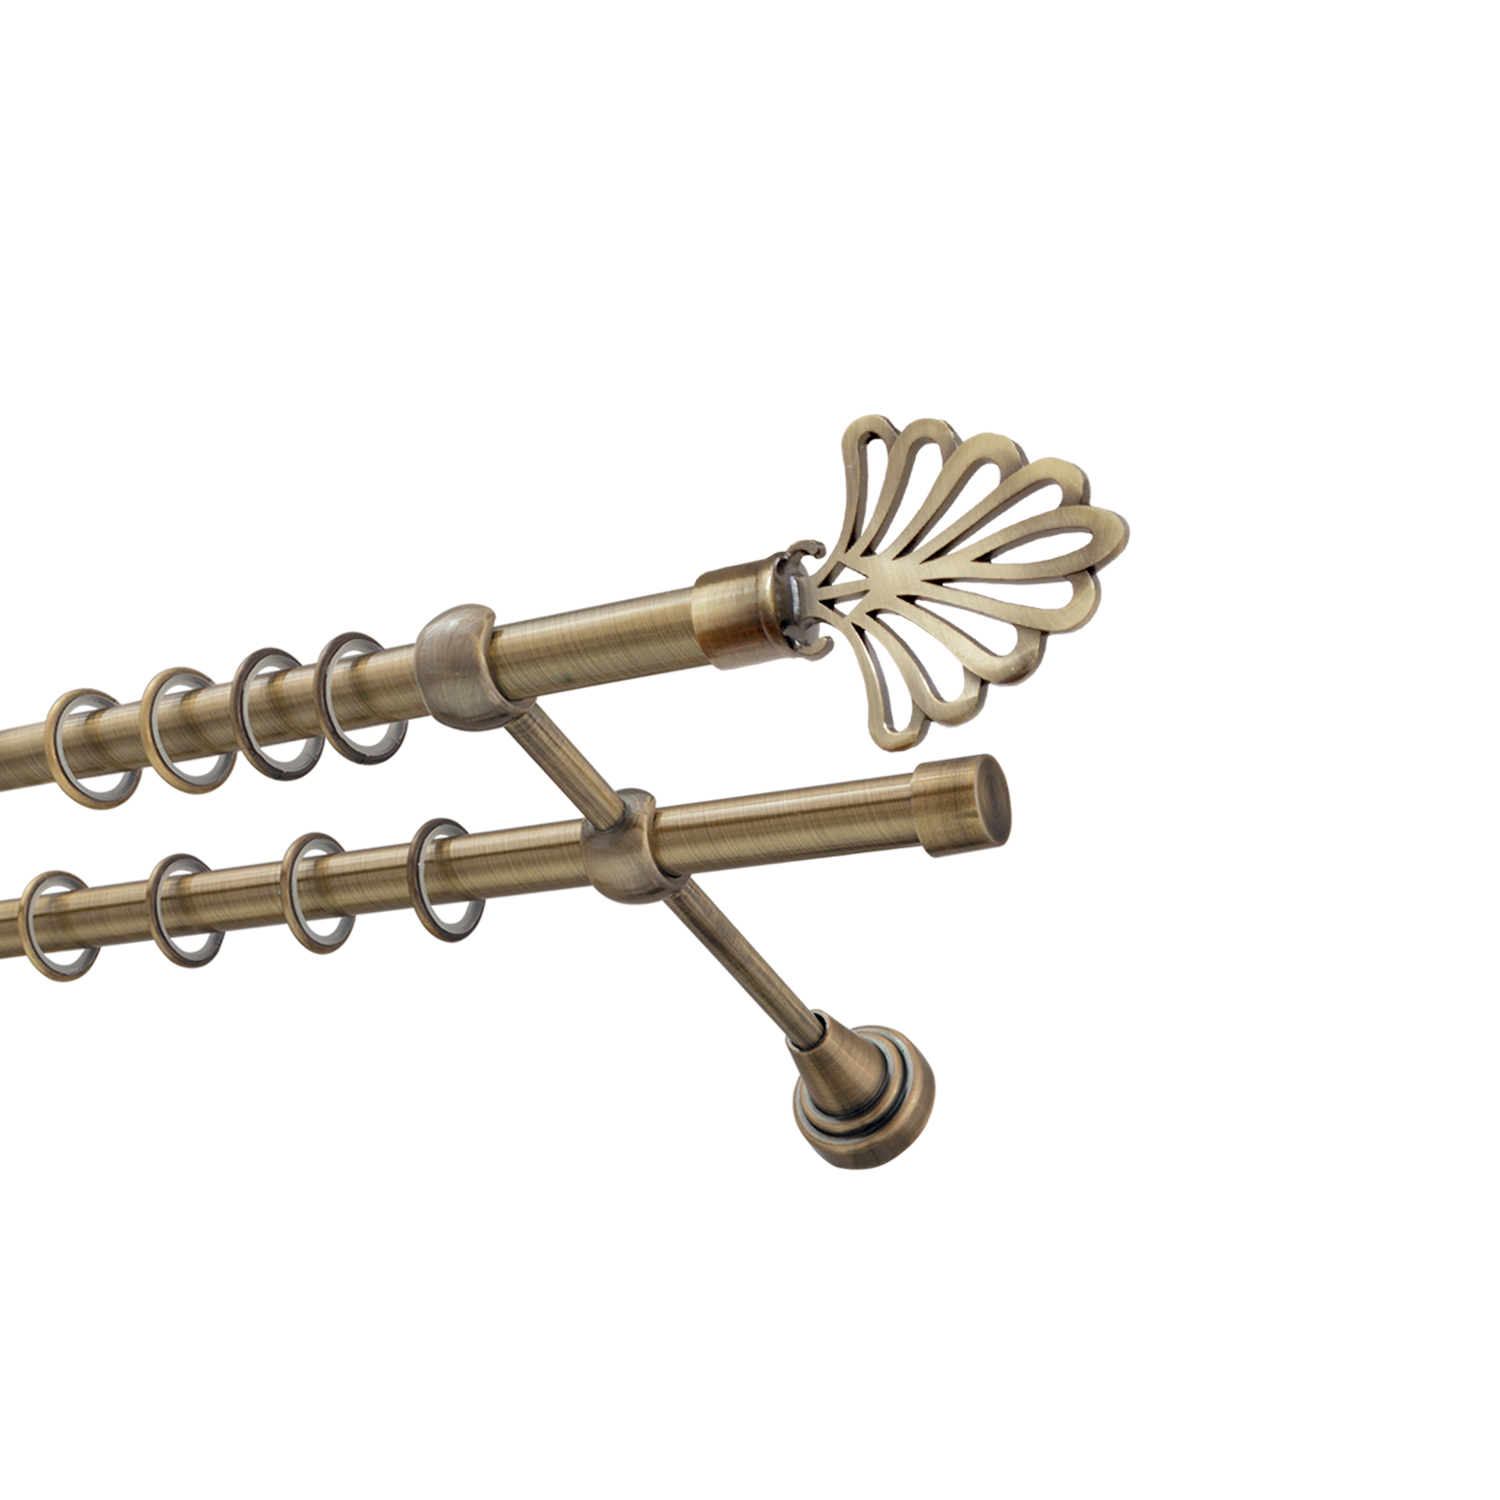 Металлический карниз для штор Бутик, двухрядный 16/16 мм, бронза, гладкая штанга, длина 240 см - фото Wikidecor.ru